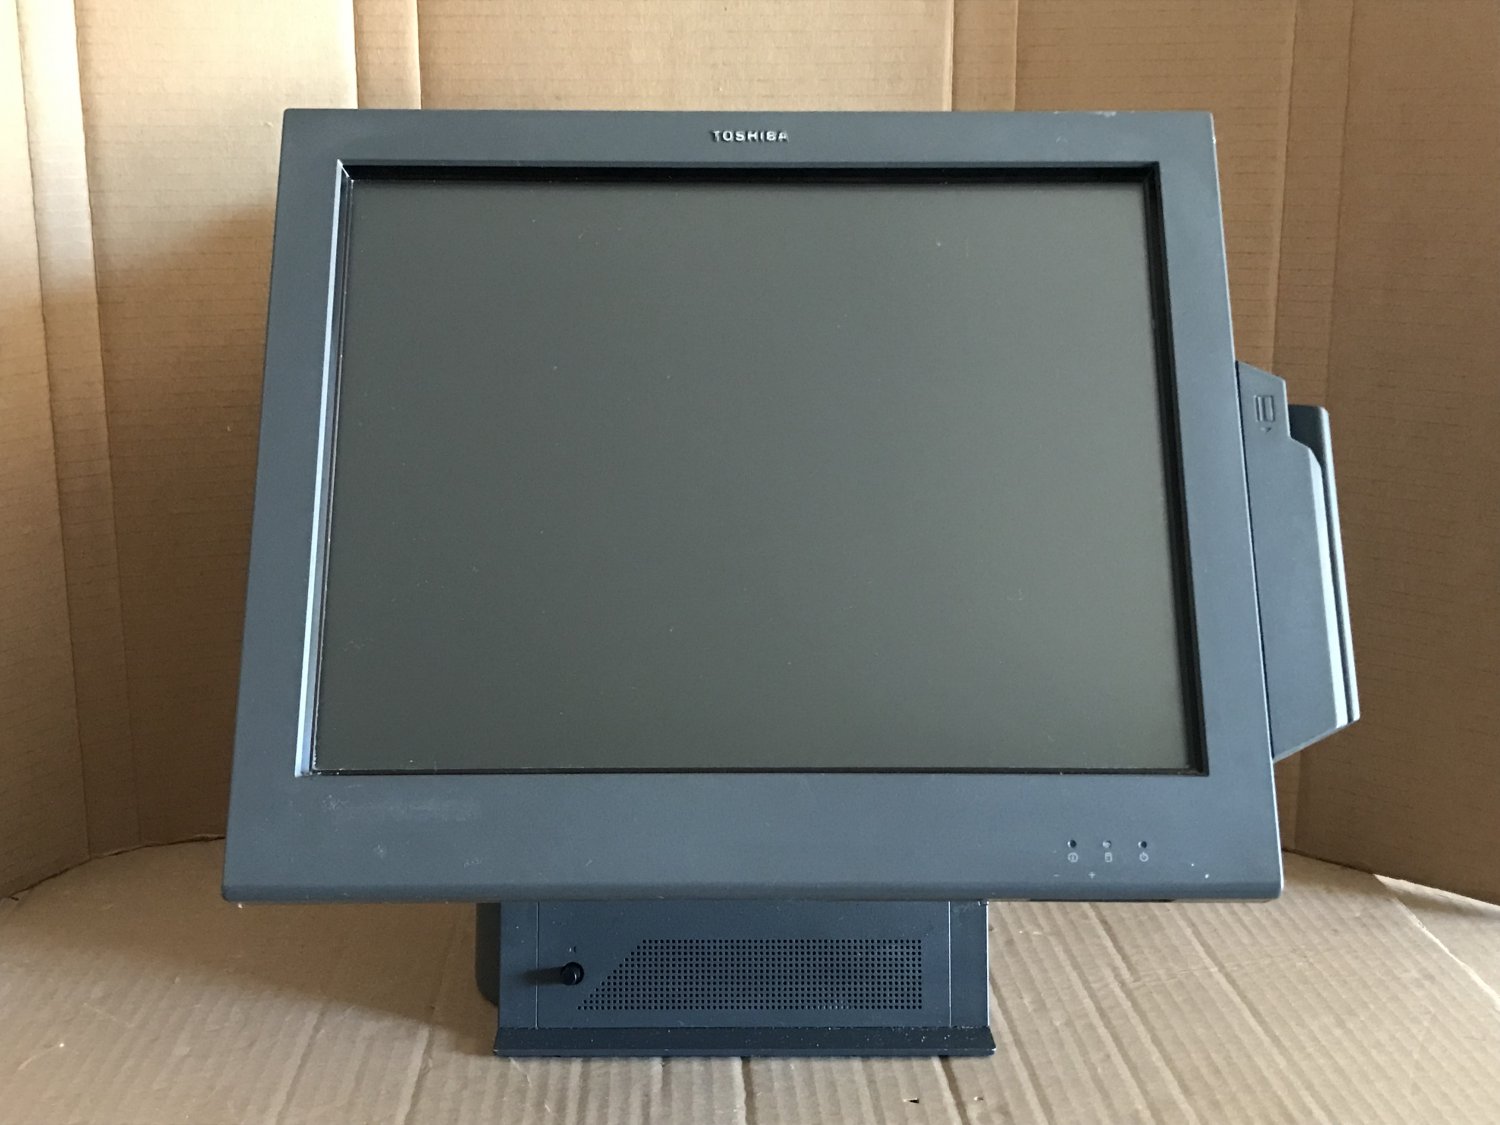 IBM Toshiba SurePOS 500 4852-E7D 15" Touch POS System Computer 500G, 2GB - NO OS